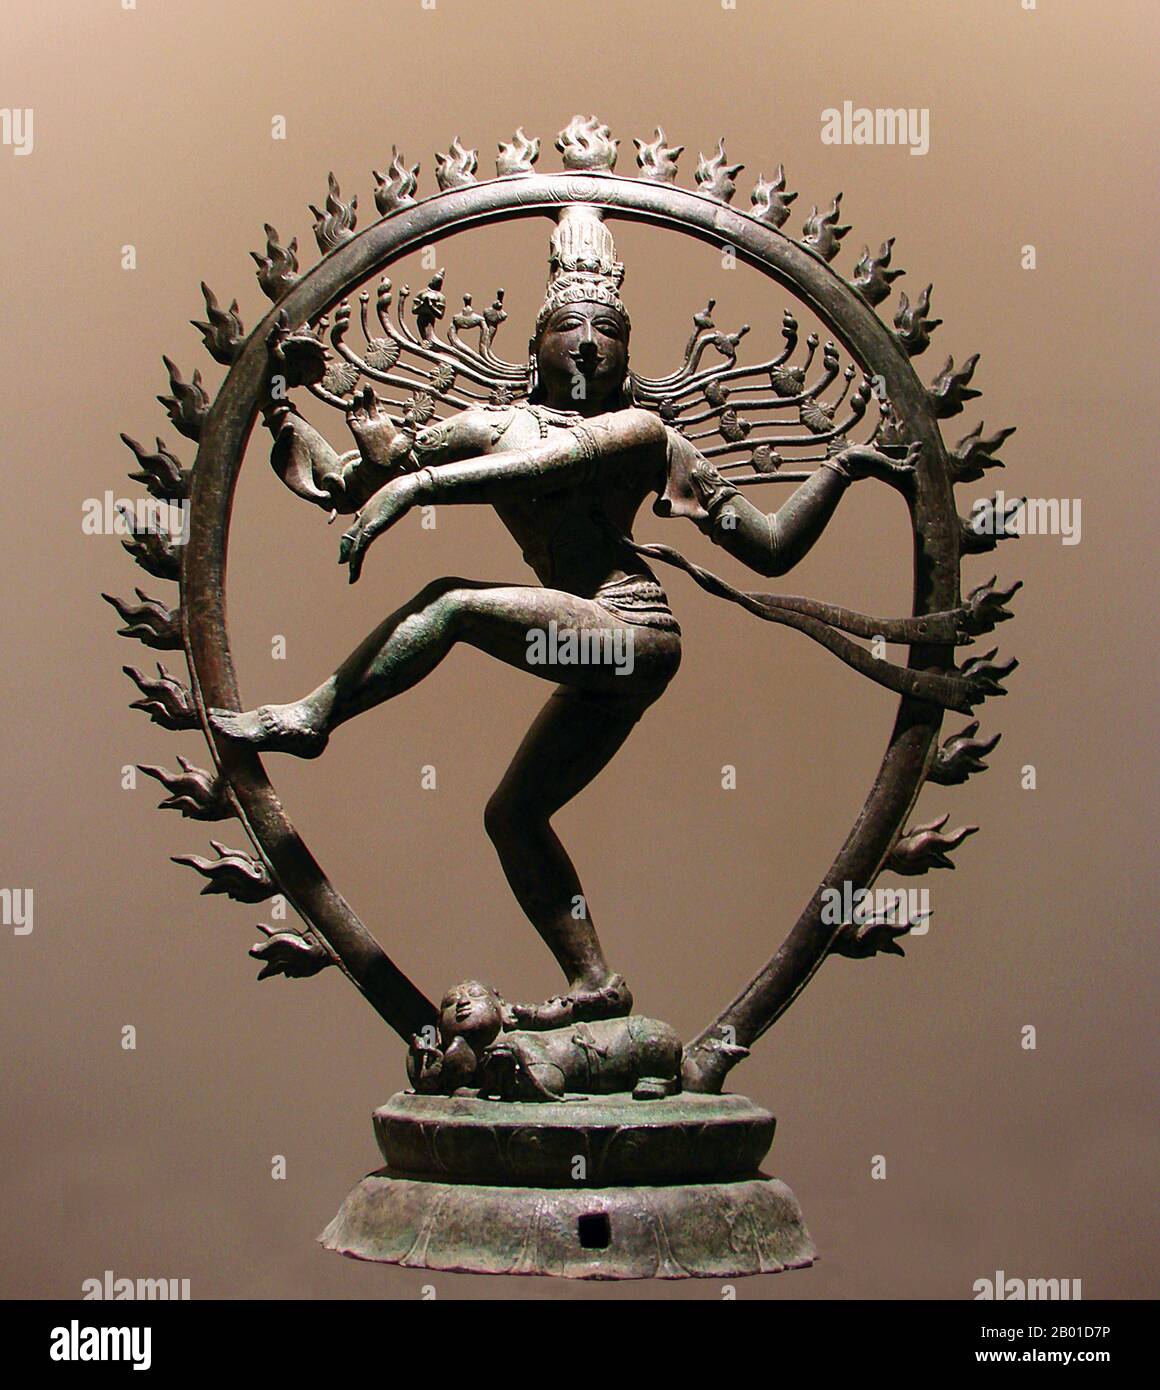 Indien: Shiva Nataraja oder 'Dancing Shiva'. Bronzestatuette aus Tamil Nadu, Chola-Dynastie, c. 11. Jahrhundert. Nataraja oder Nataraj ('der Herr (oder König) des Tanzes'; Tamil: Koothhan) ist eine Darstellung des Hindu-gottes Shiva als der kosmische Tänzer Koothan, der seinen göttlichen Tanz aufführt, um ein erschöpftes Universum zu zerstören und Vorbereitungen für gott Brahma zu treffen, um den Prozess der Schöpfung zu beginnen. Shiva, ein tamilisches Konzept, wurde zuerst als Nataraja in den berühmten Chola-Bronzen und Skulpturen von Chidambaram dargestellt. Stockfoto